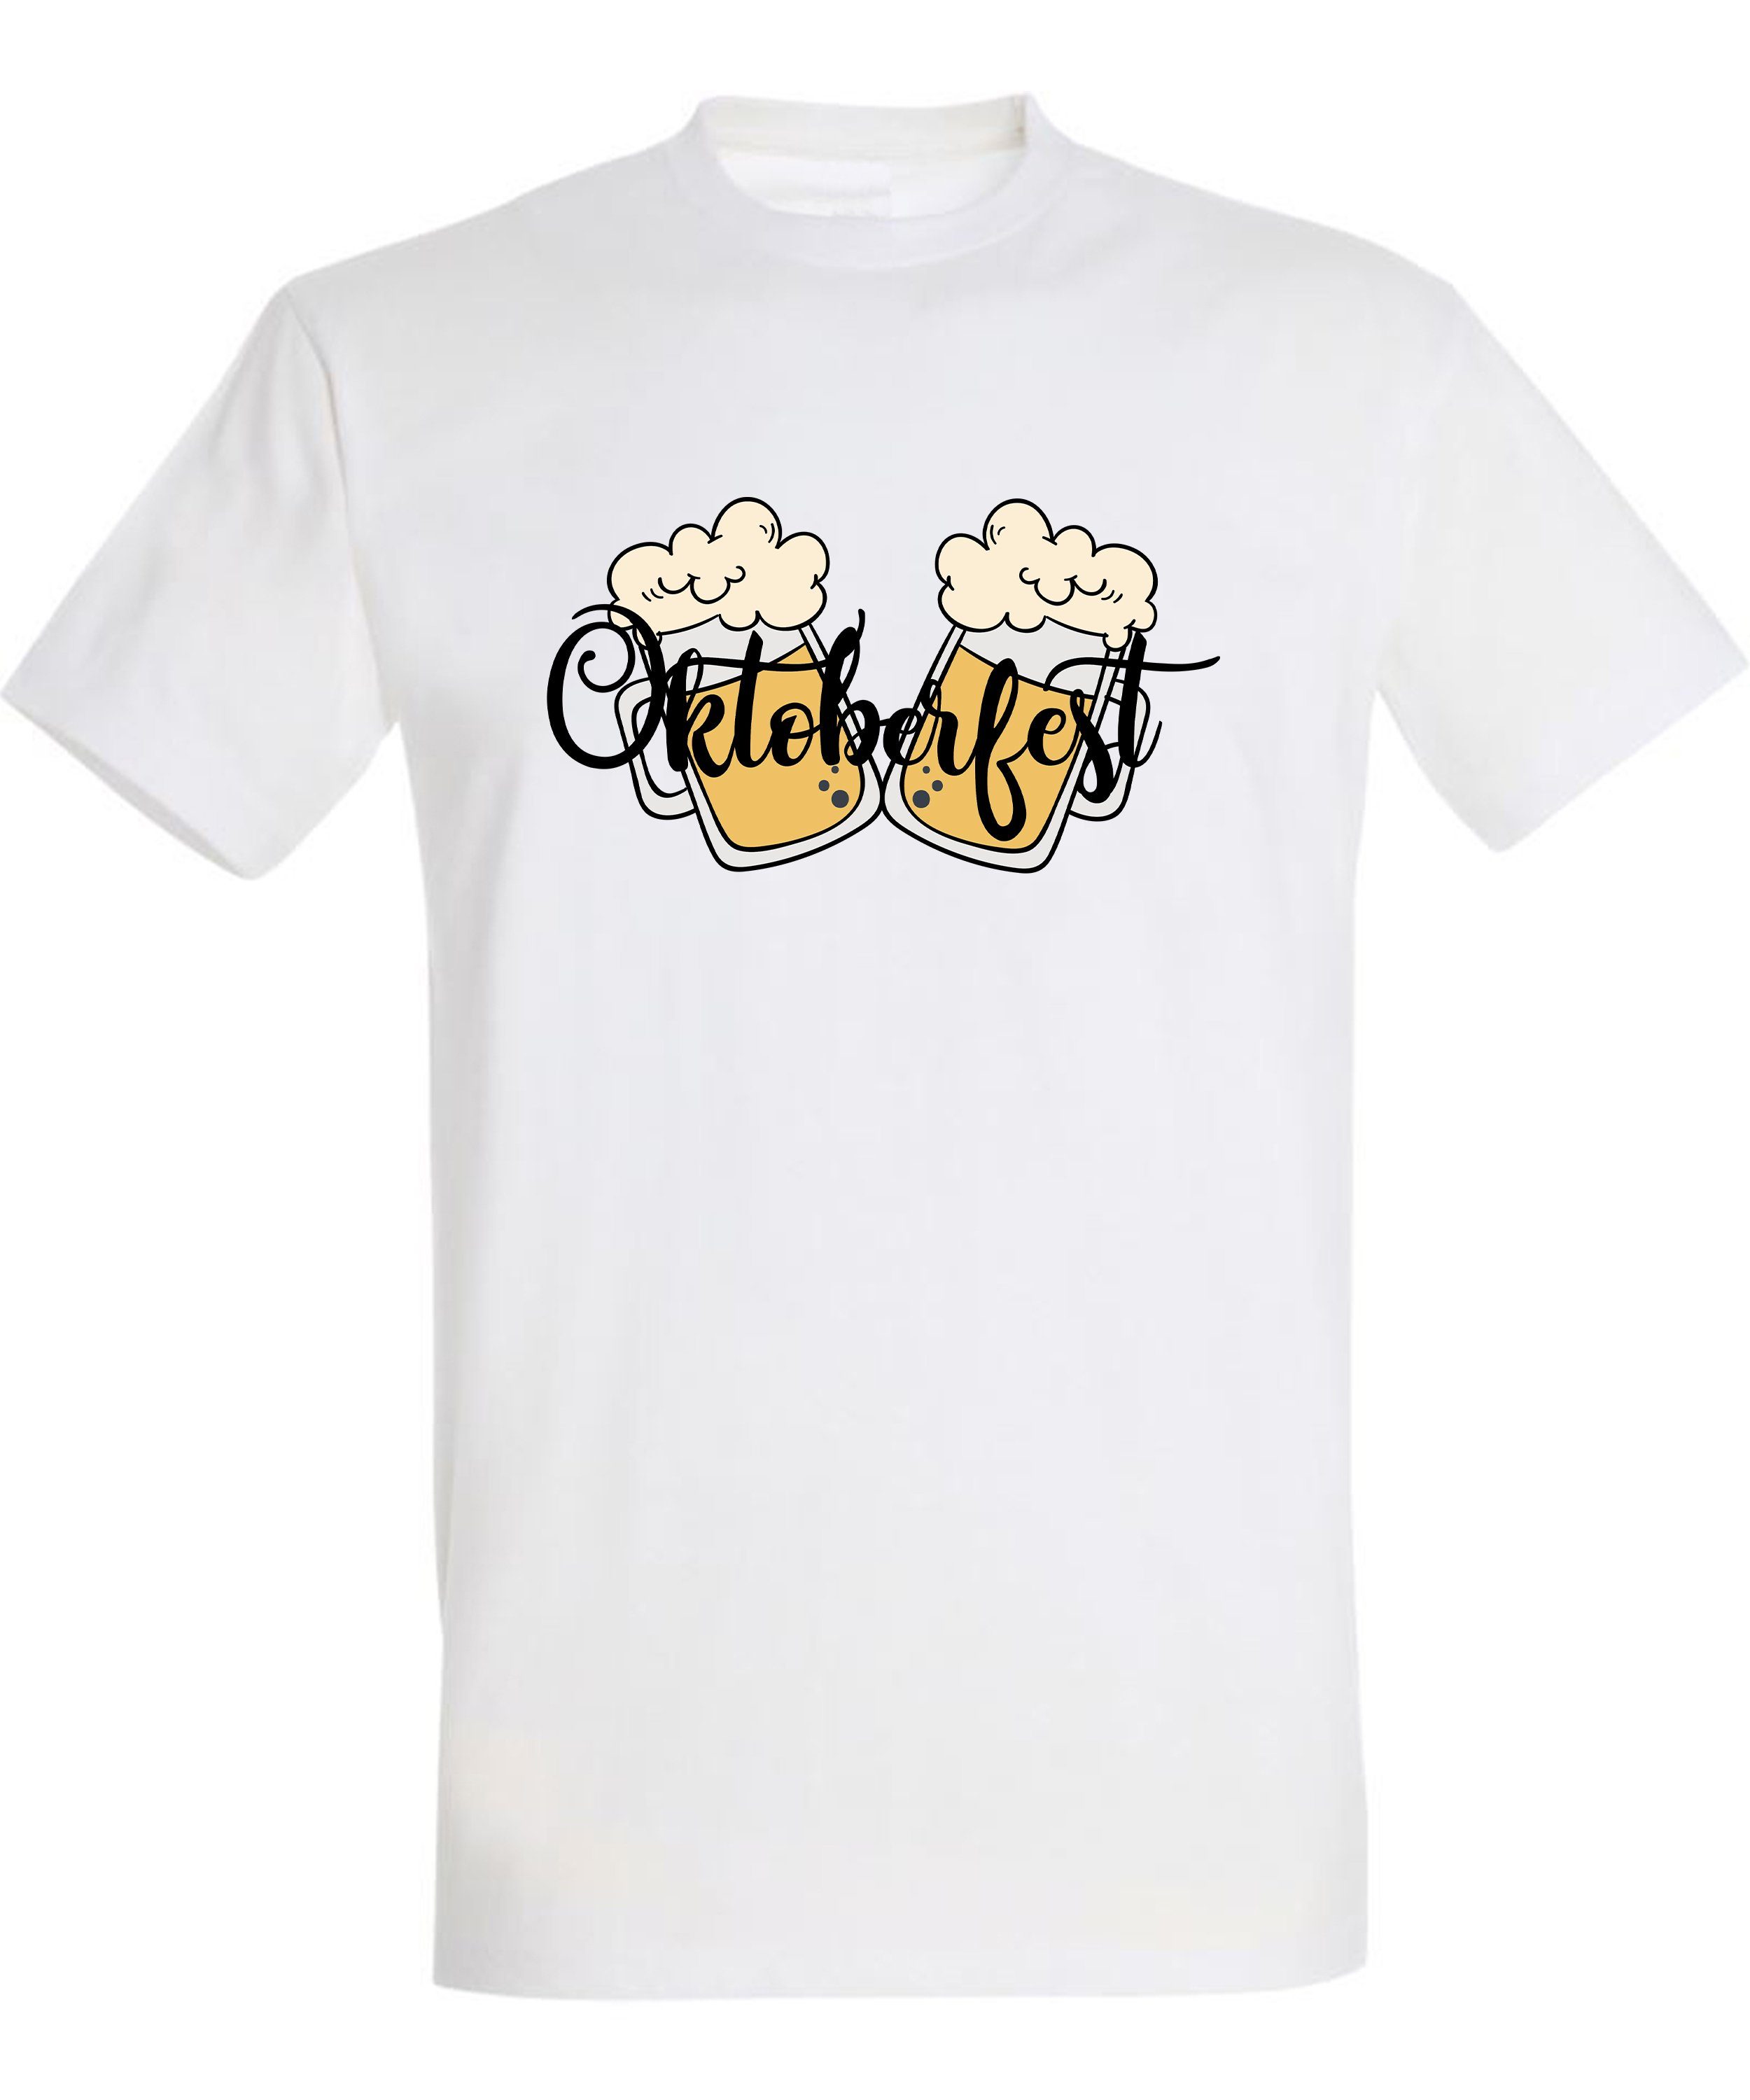 - Fit, Biergläser T-Shirt i326 MyDesign24 Aufdruck Trinkshirt Baumwollshirt Party Herren Oktoberfest mit 2 T-Shirt weiss Regular Shirt